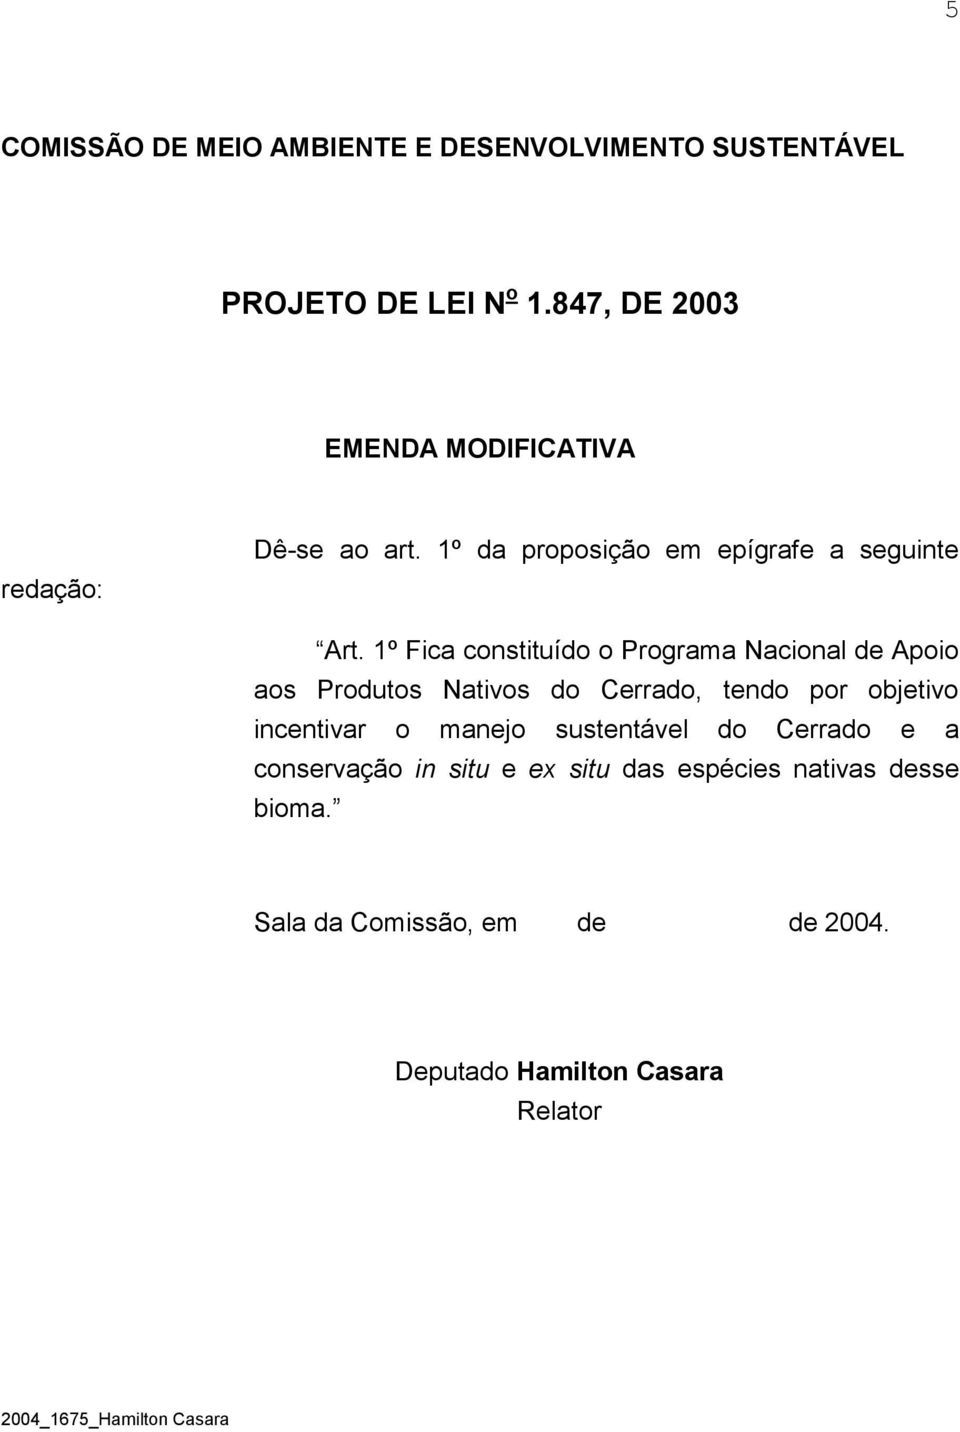 1º Fica constituído o Programa Nacional de Apoio aos Produtos Nativos do Cerrado, tendo por objetivo incentivar o manejo